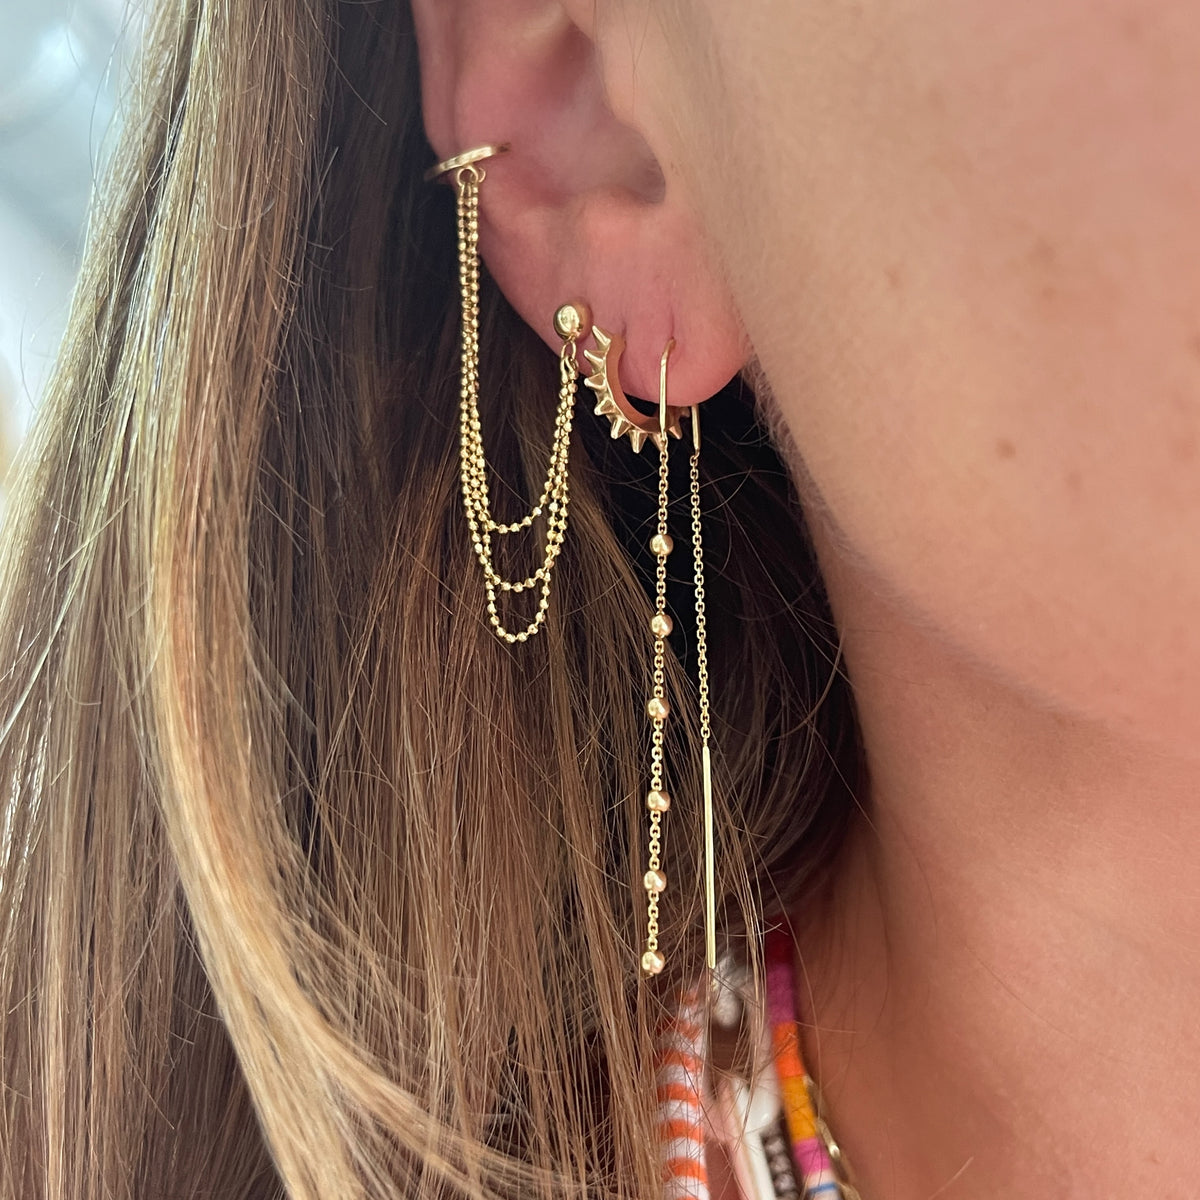 Gold Cuff Earrings Chain, Long Chain Ear Cuff Earrings